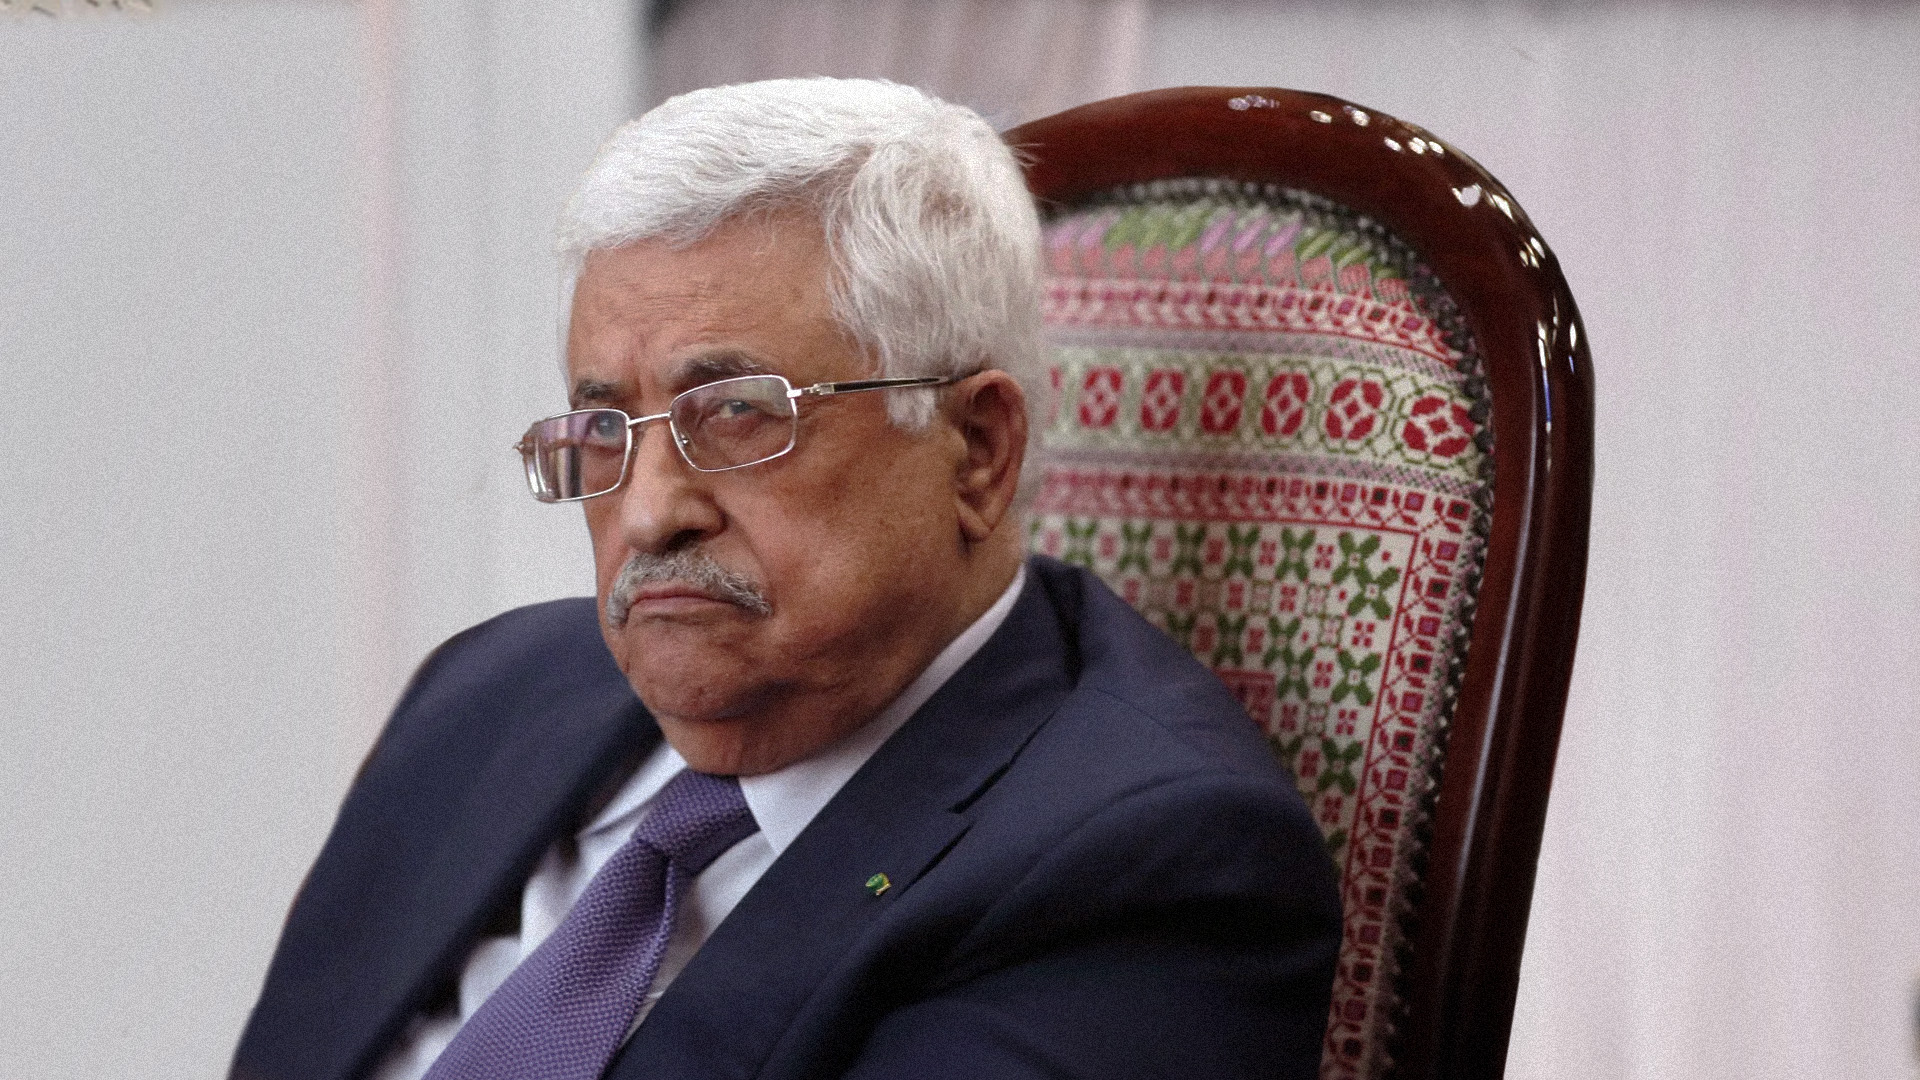 صورة محمود عباس يهدد بعقد مفاوضات سلام أحادية الجانب